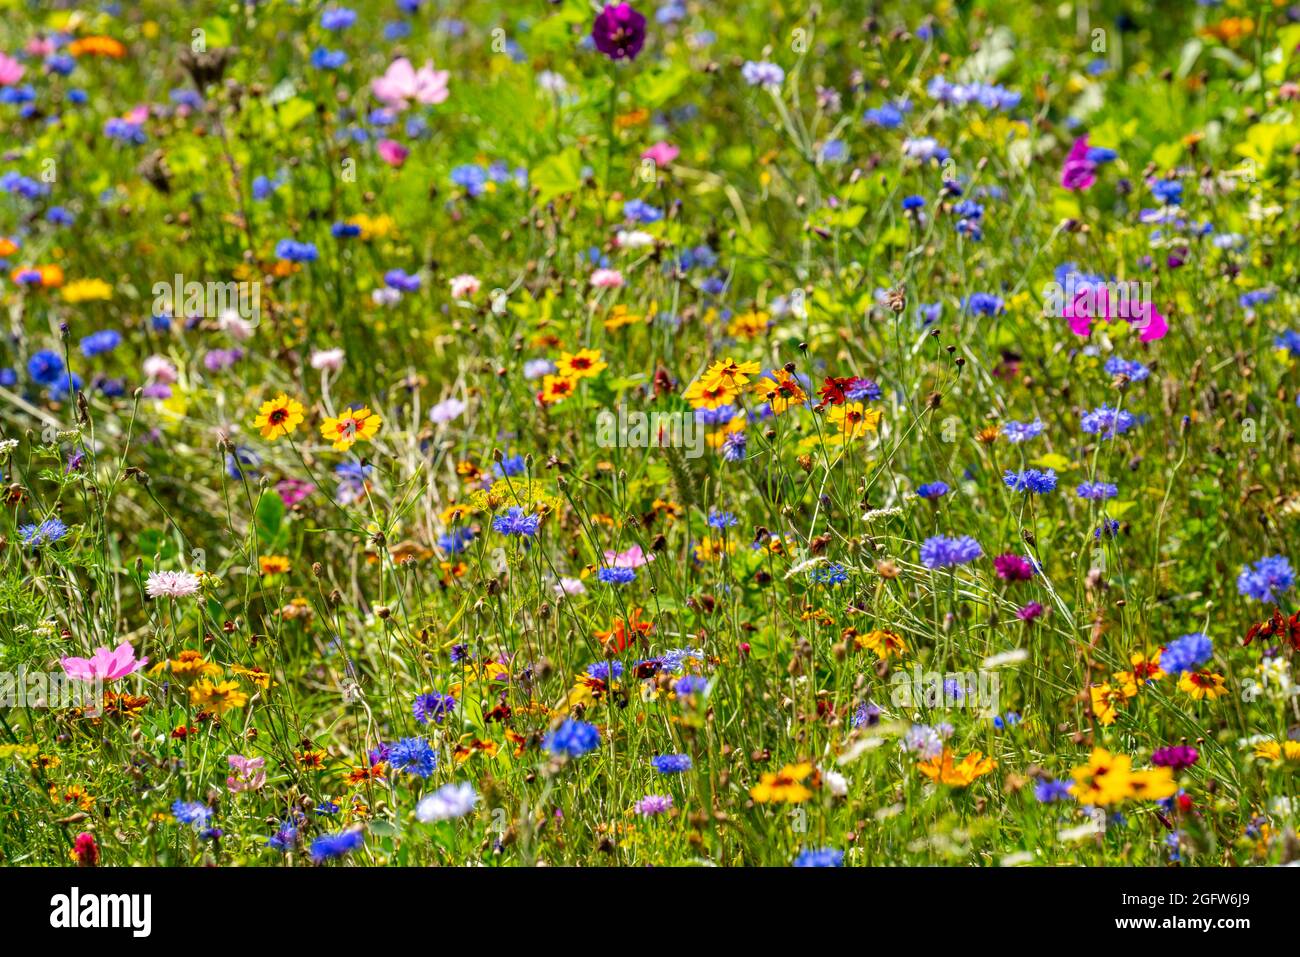 Wildblumenwiese, viele verscheidene Blumen und Pflanzen, wichtiges Biotop für Insekten, Stockfoto